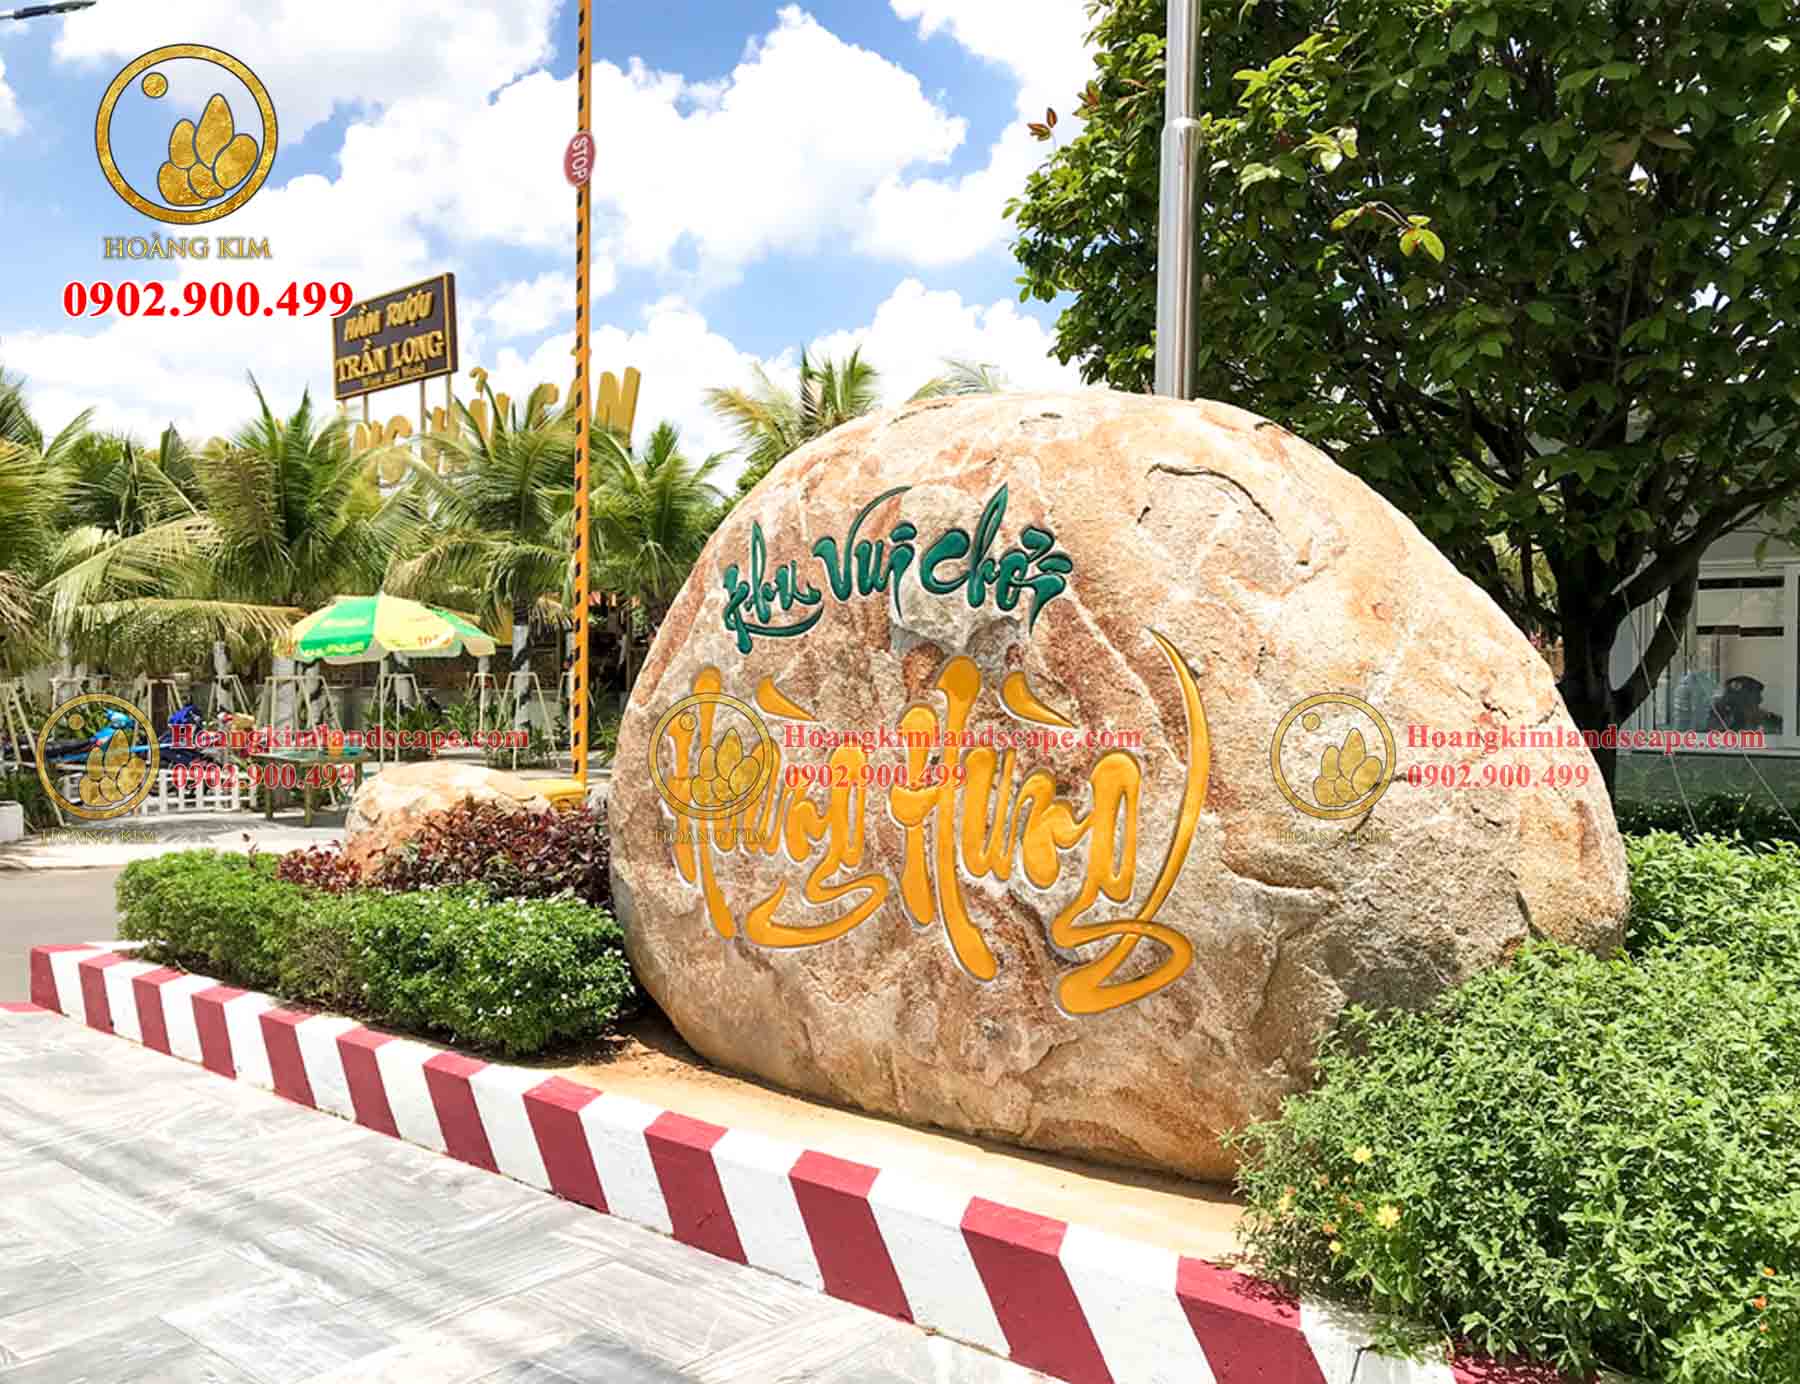 Điểm nhấn của cảnh quan khu vui chơi Hoàng Hùng là tảng đá lớn khắc chữ “Khu vui chơi Hoàng Hùng”